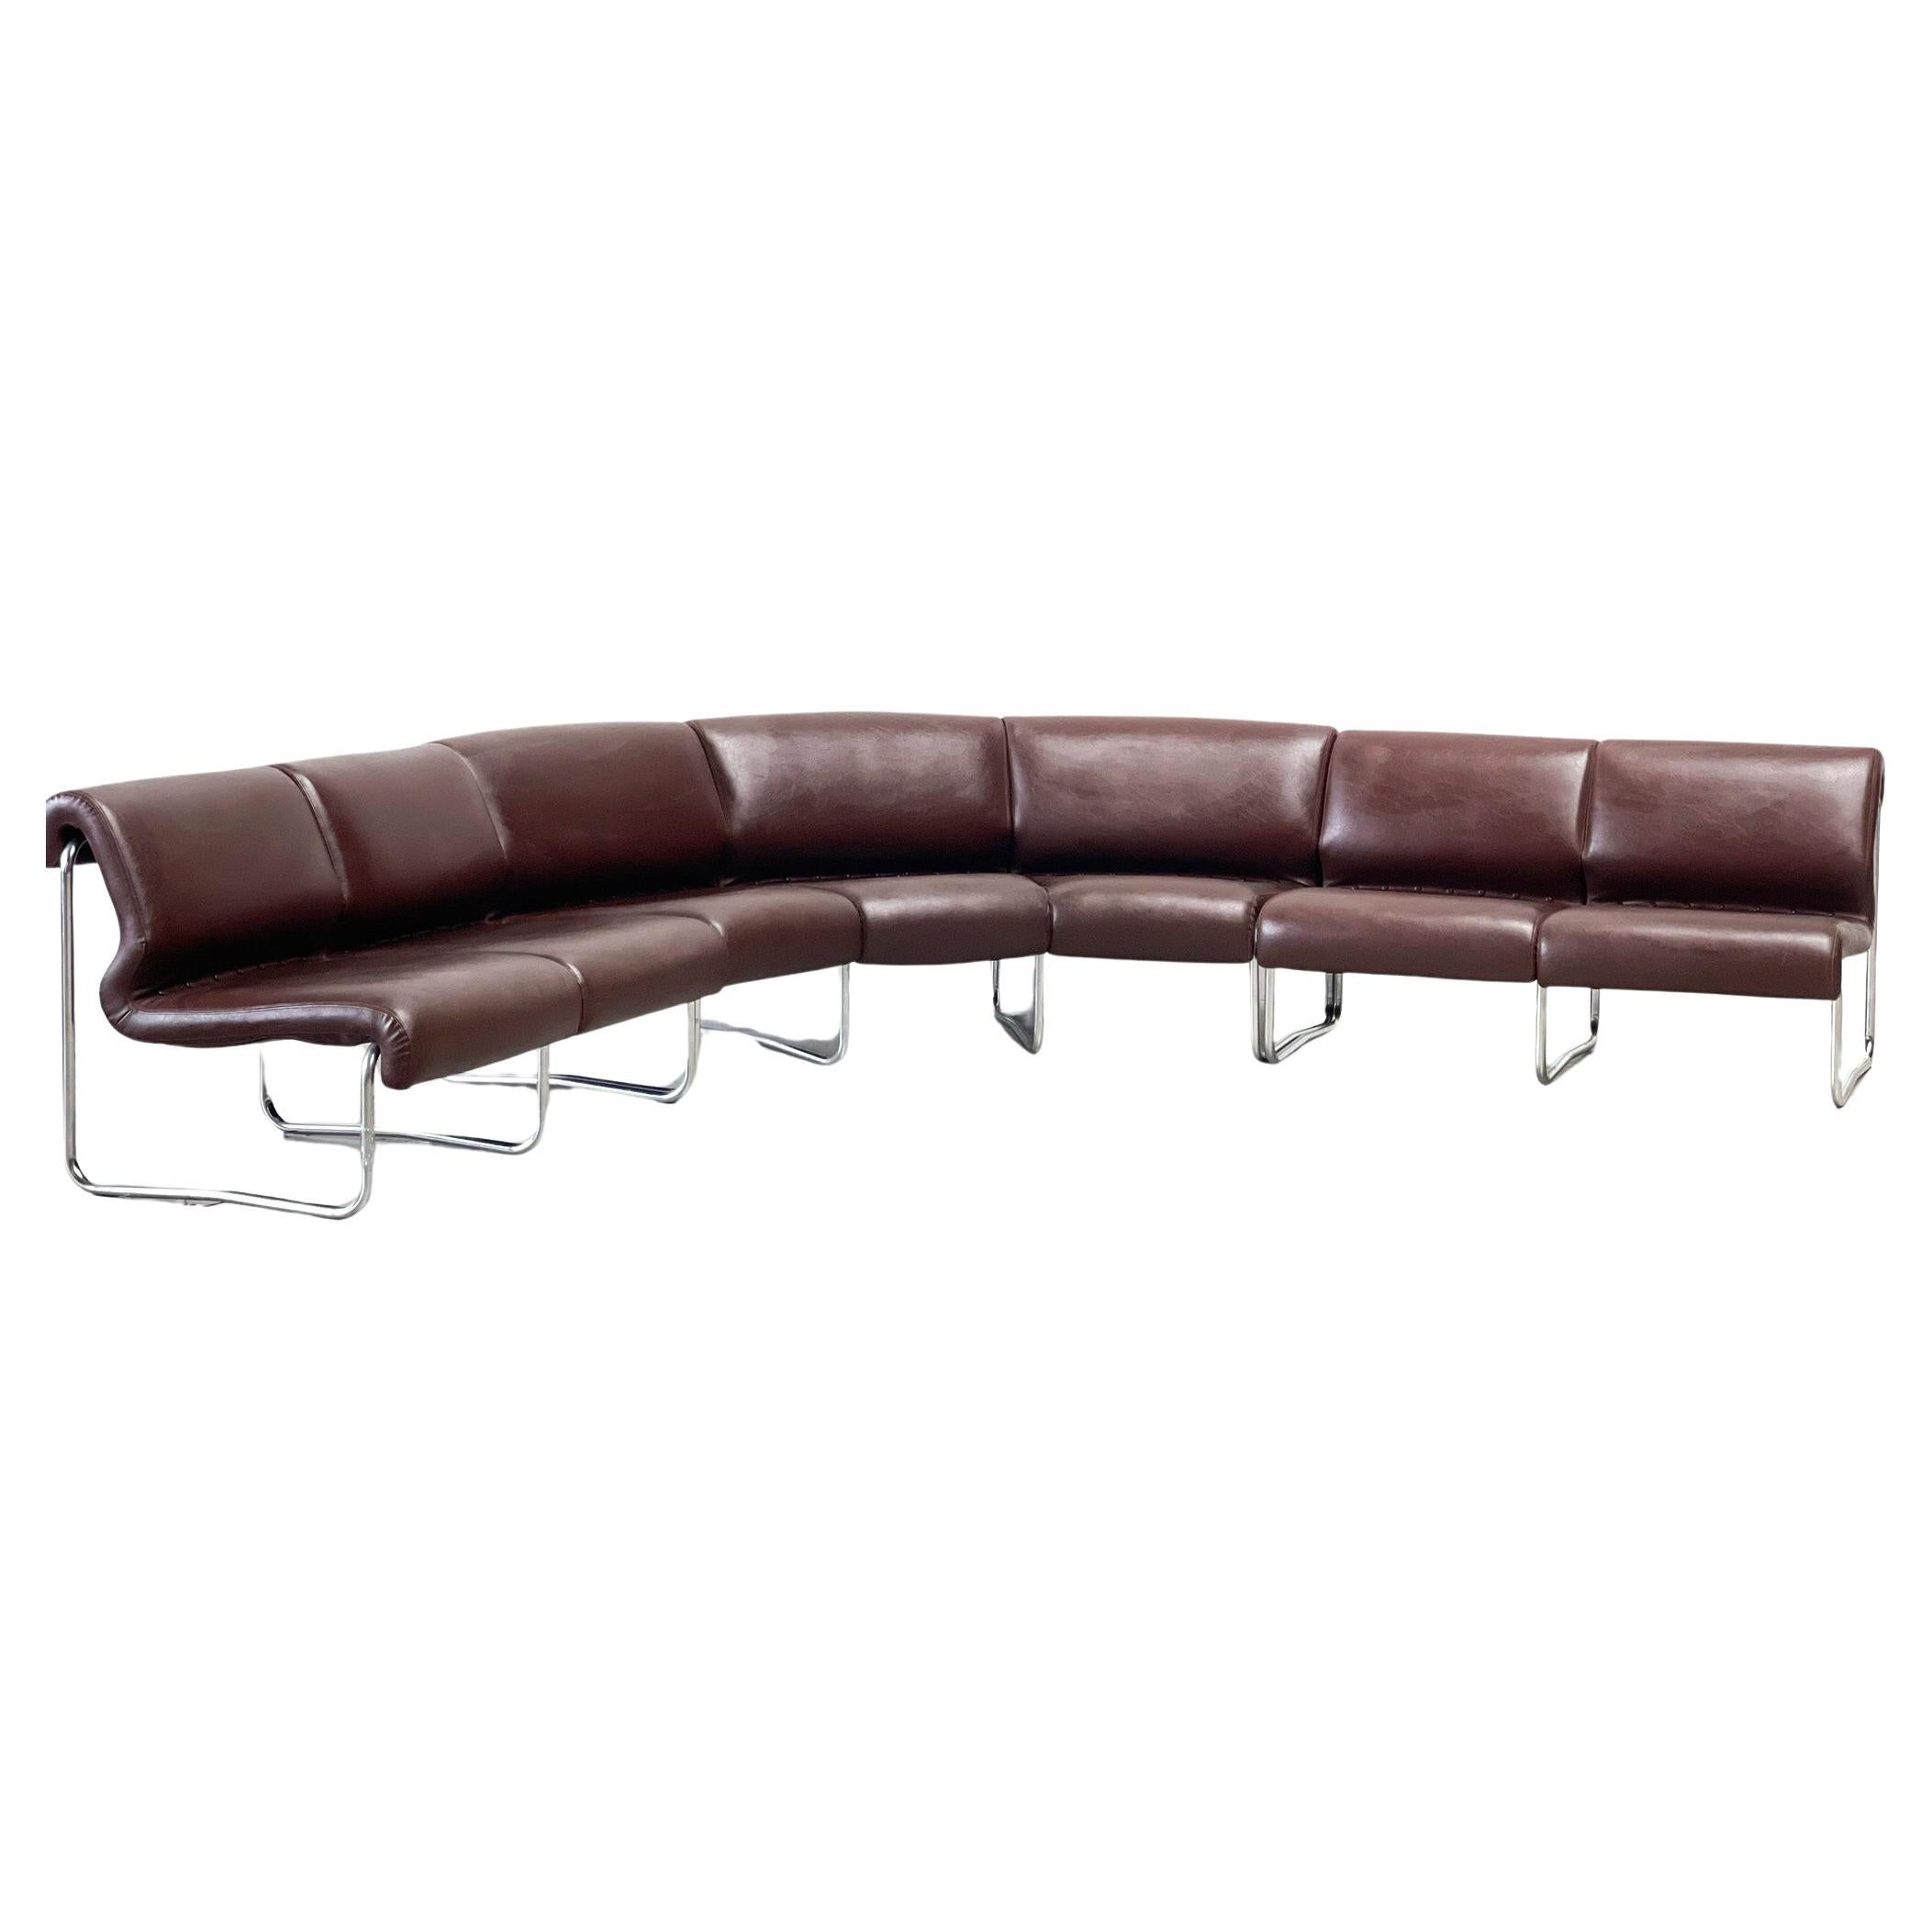 Brown leather tubular modular sofa For Sale